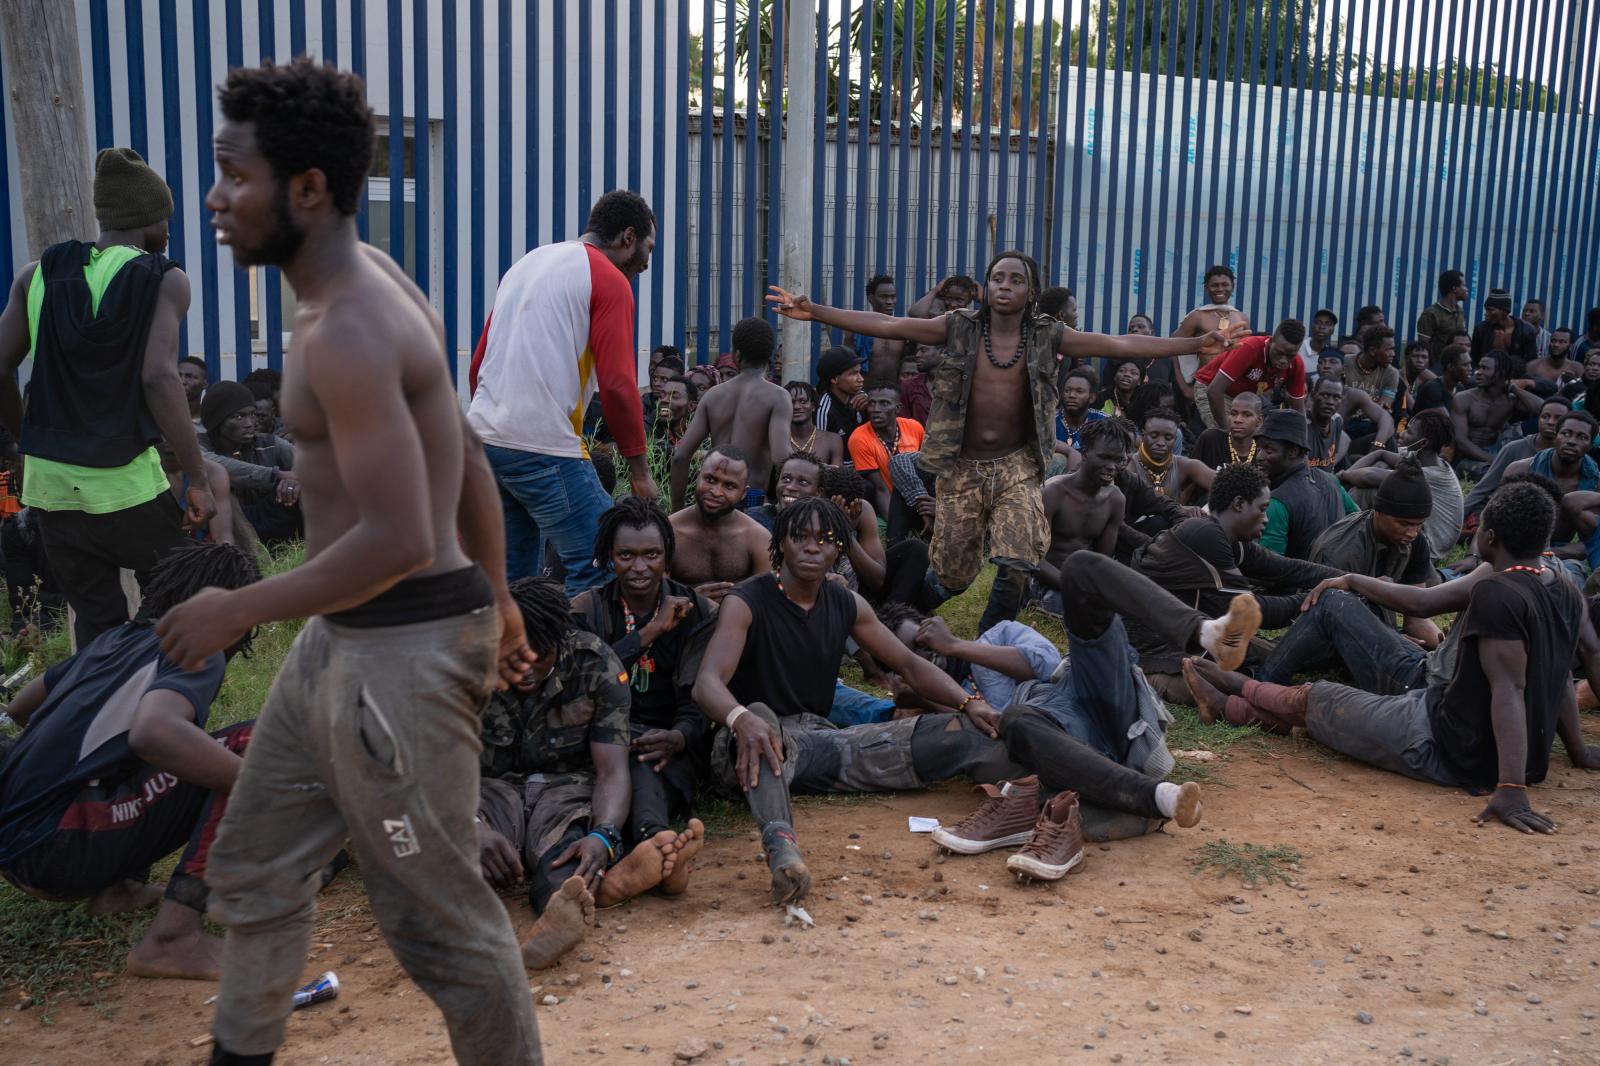 El País: Más de 200 migrantes subsaharianos consiguen entrar en Melilla en un nuevo salto a la valla